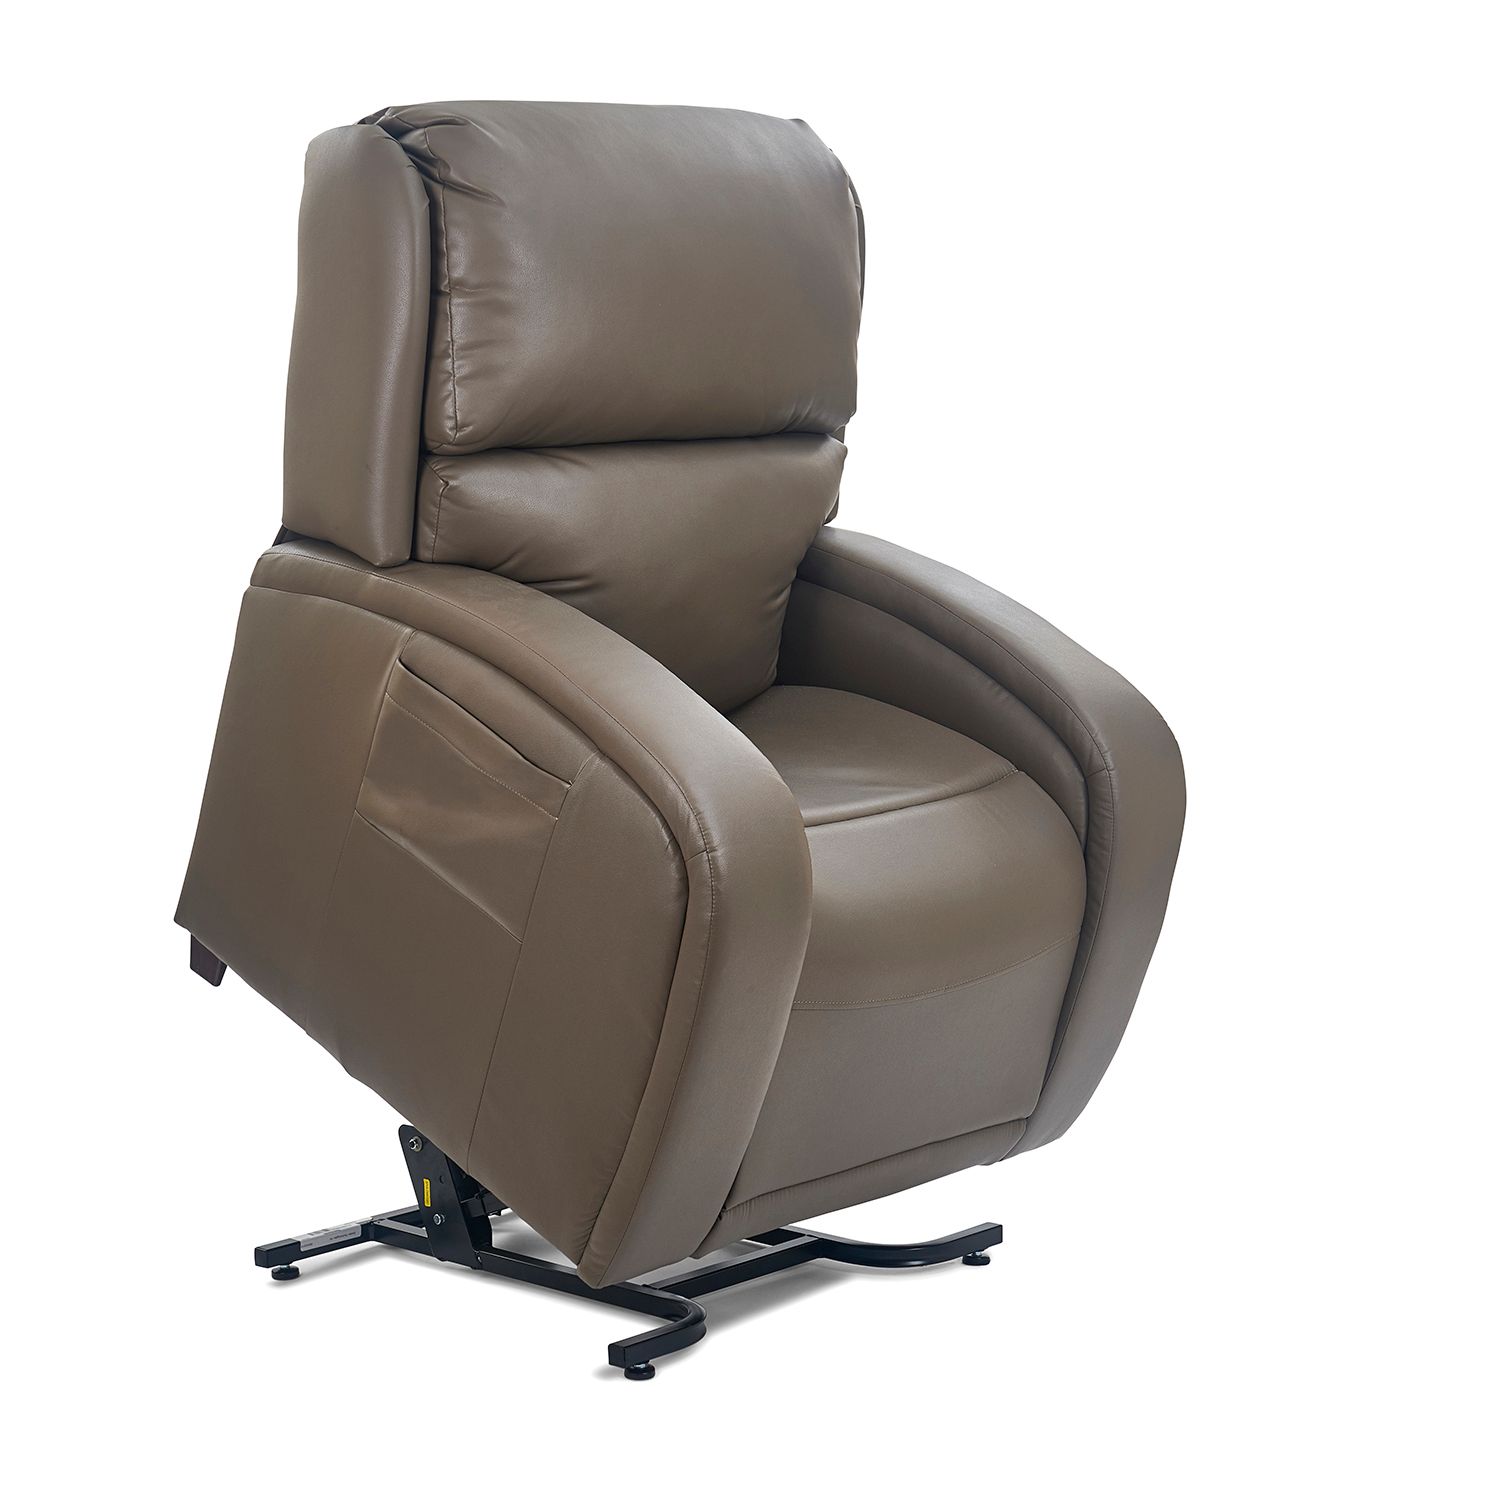 Whittier Golden Tech lift chair recliner twilight ezsleeper cloud viva relaxer maxi-comfort